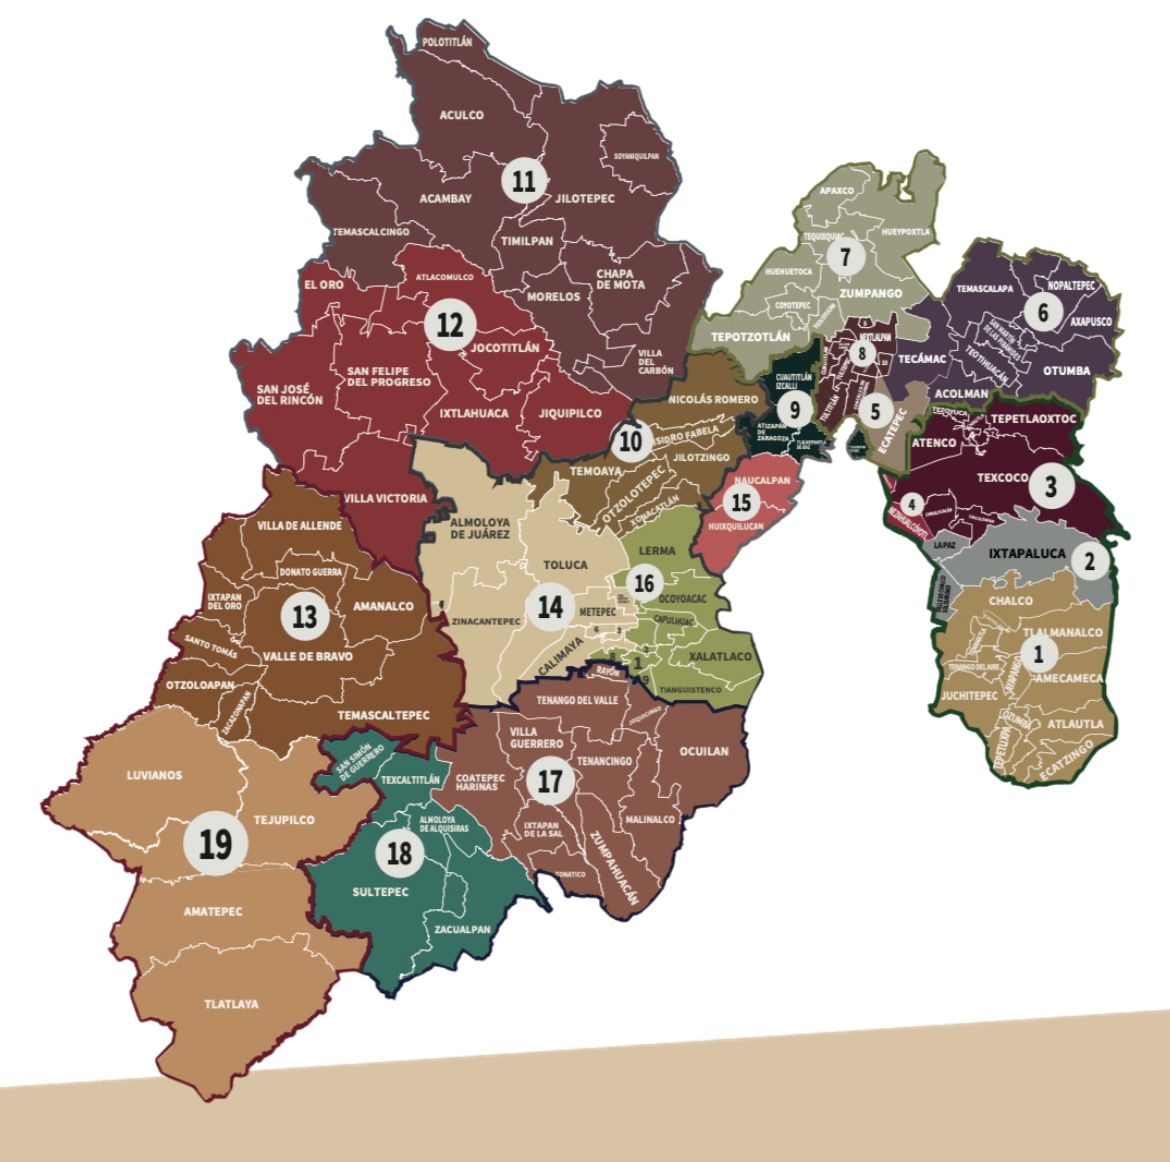 La división queda conformada por siete zonas en las que se distribuyen 19 regiones.